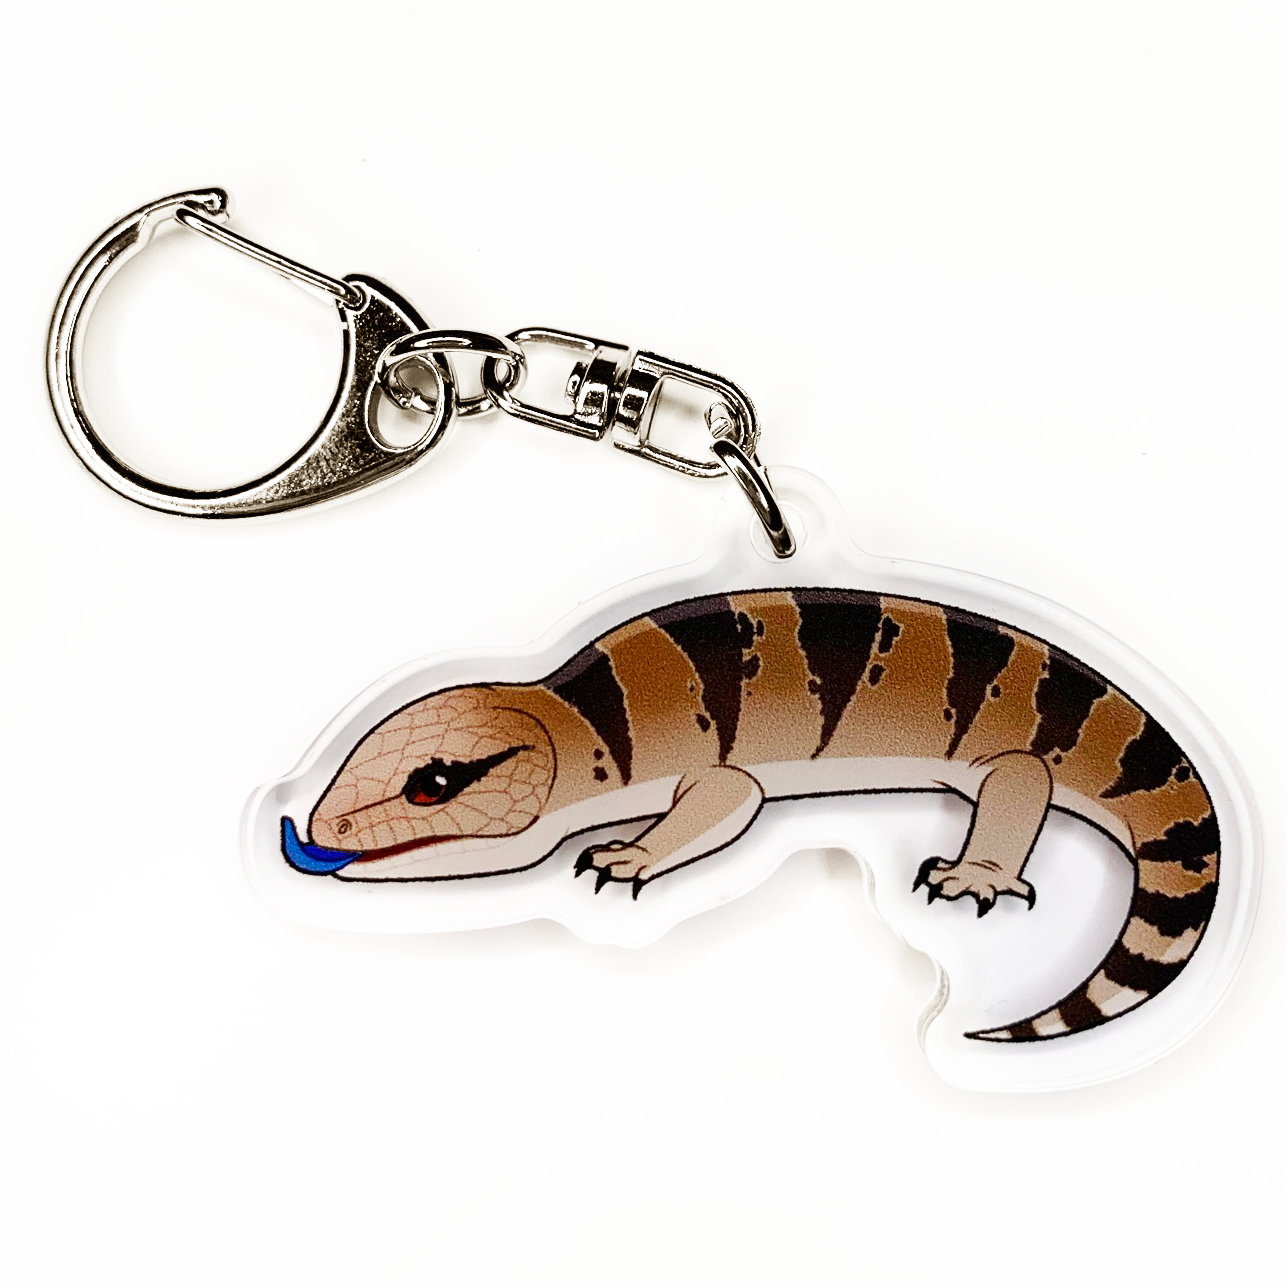 Acrylic Keychain - Lizards